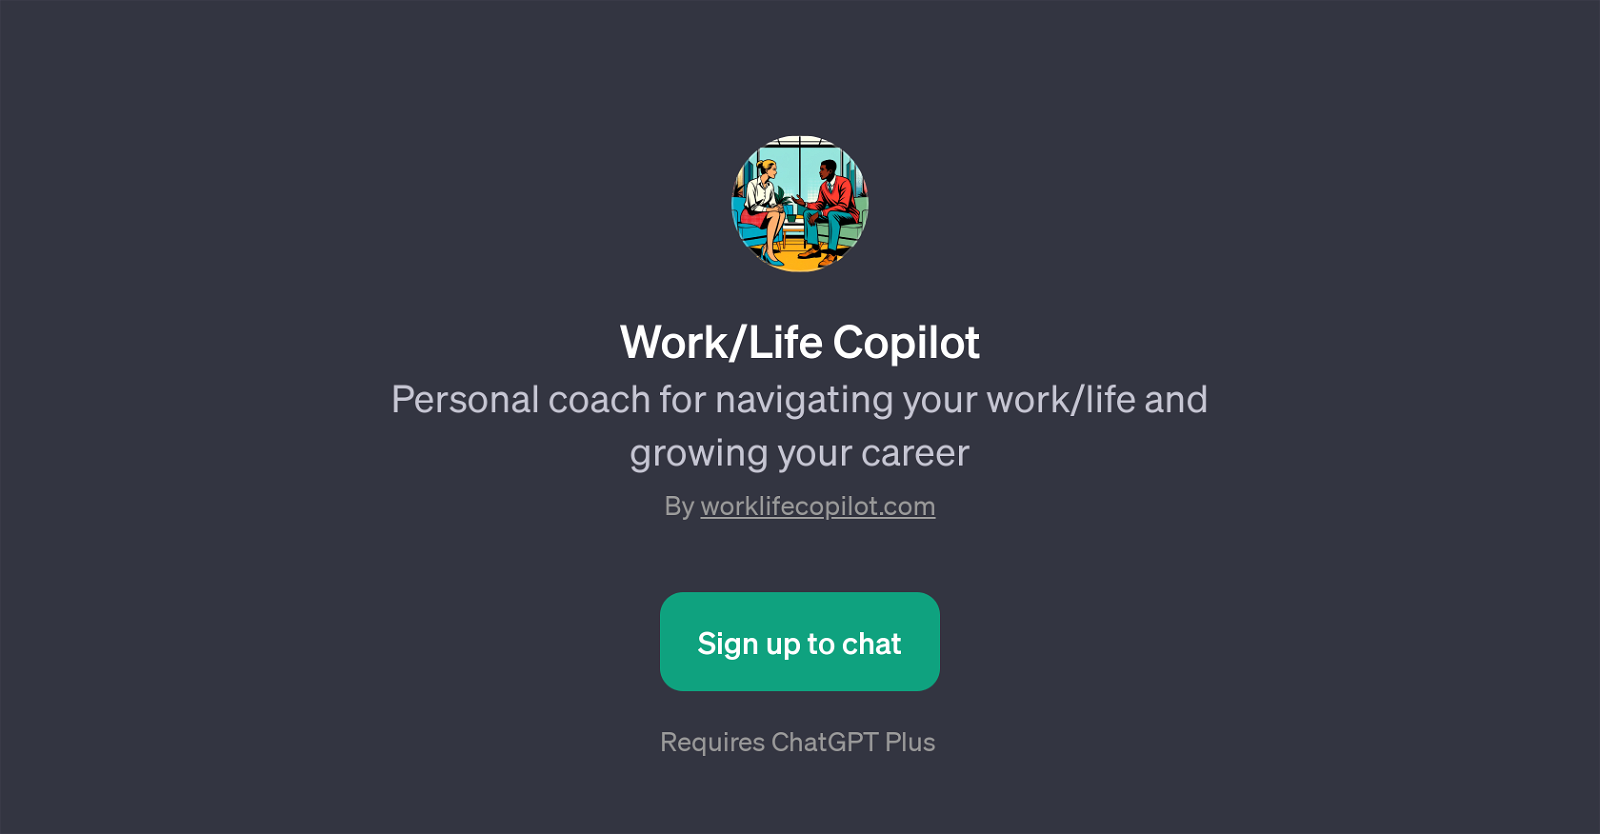 Work/Life Copilot website